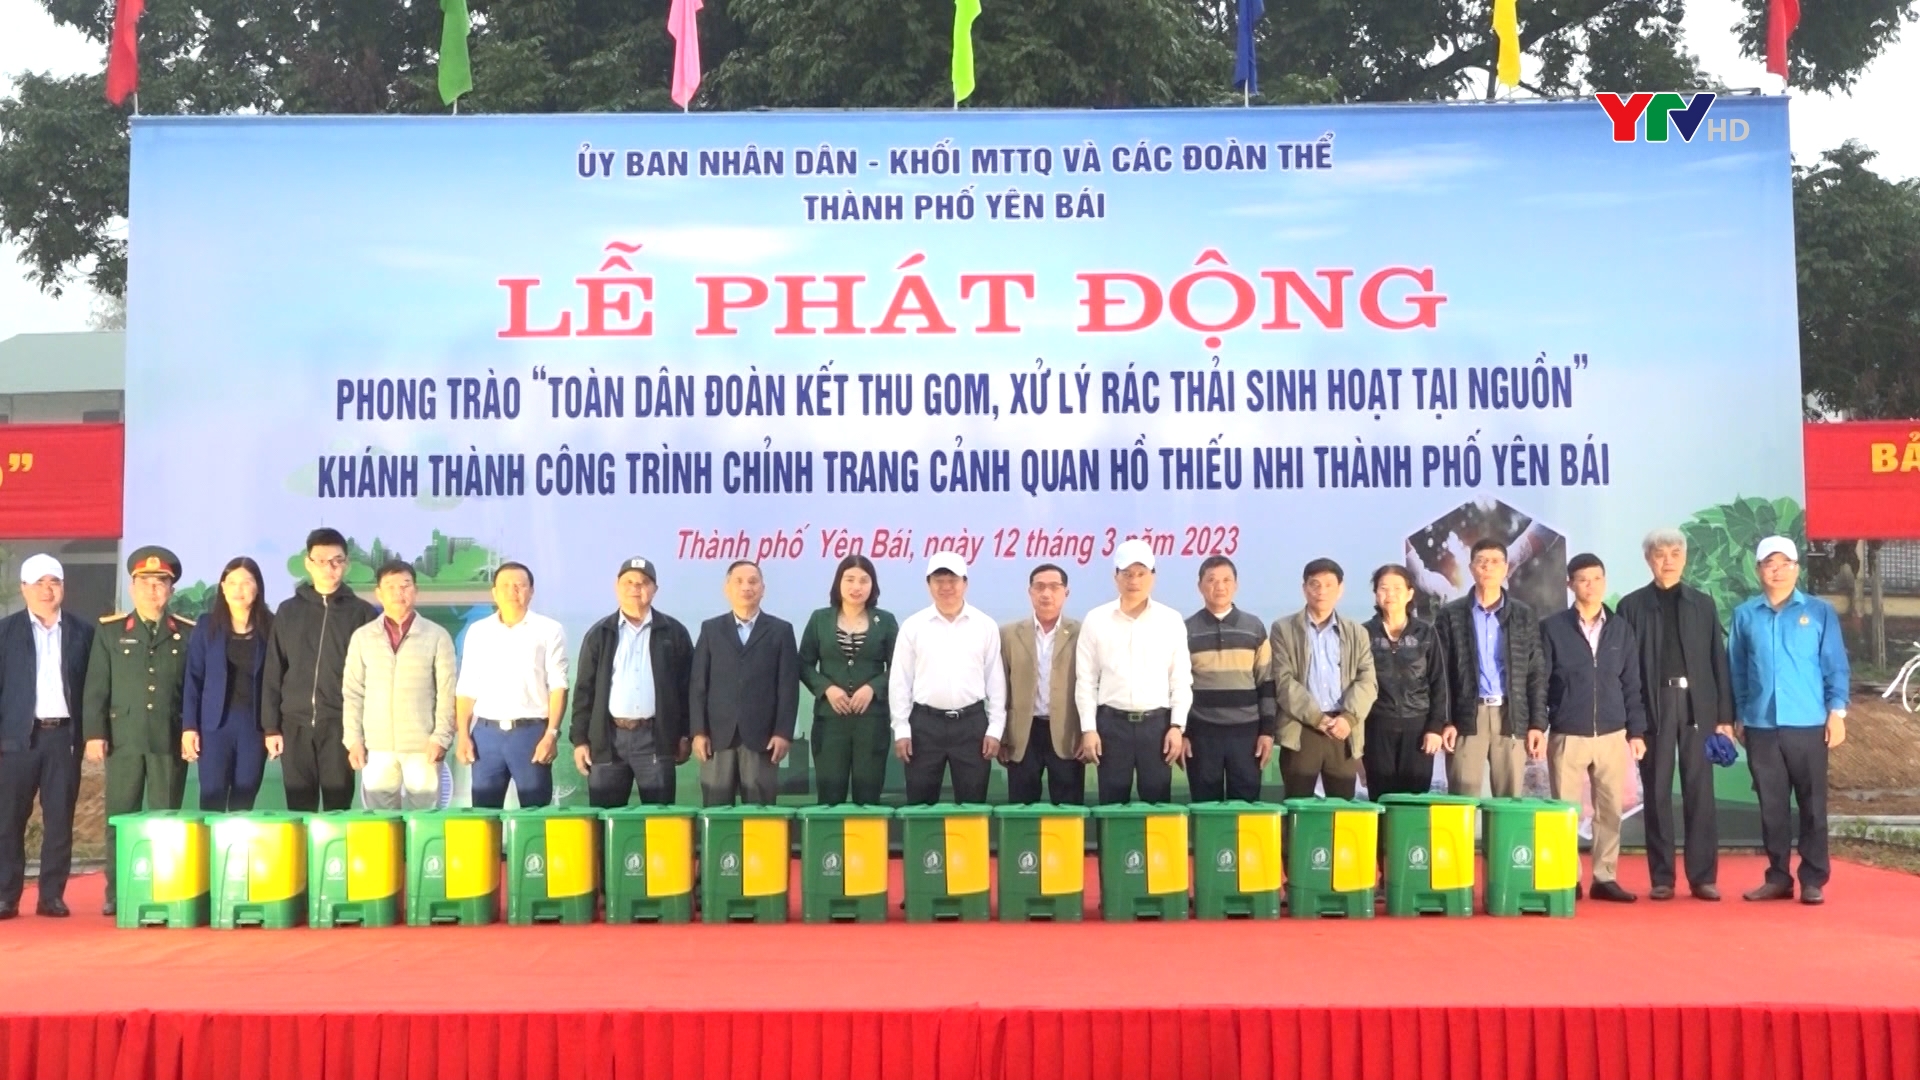 Thành phố Yên Bái: Phát động Phong trào “Toàn dân đoàn kết thu gom, xử lý rác thải sinh hoạt tại nguồn” và khánh thành công trình cảnh quan Hồ Thiếu nhi